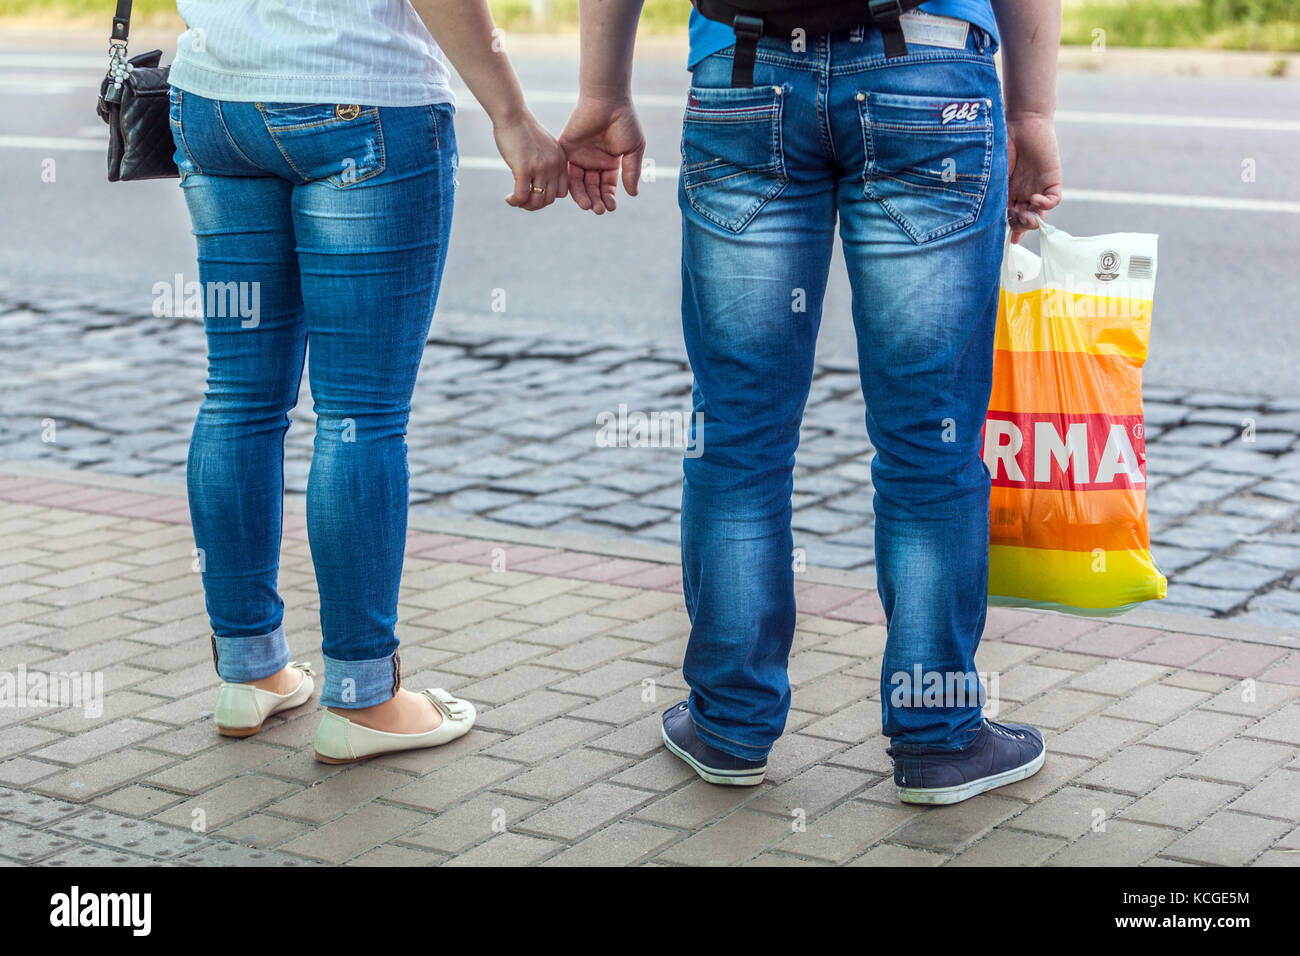 Die Leute, die die Hände halten, sind hinten, ein Mann, der eine Plastiktüte hält, Jeans Street Style Frau Mann Jeans Stockfoto